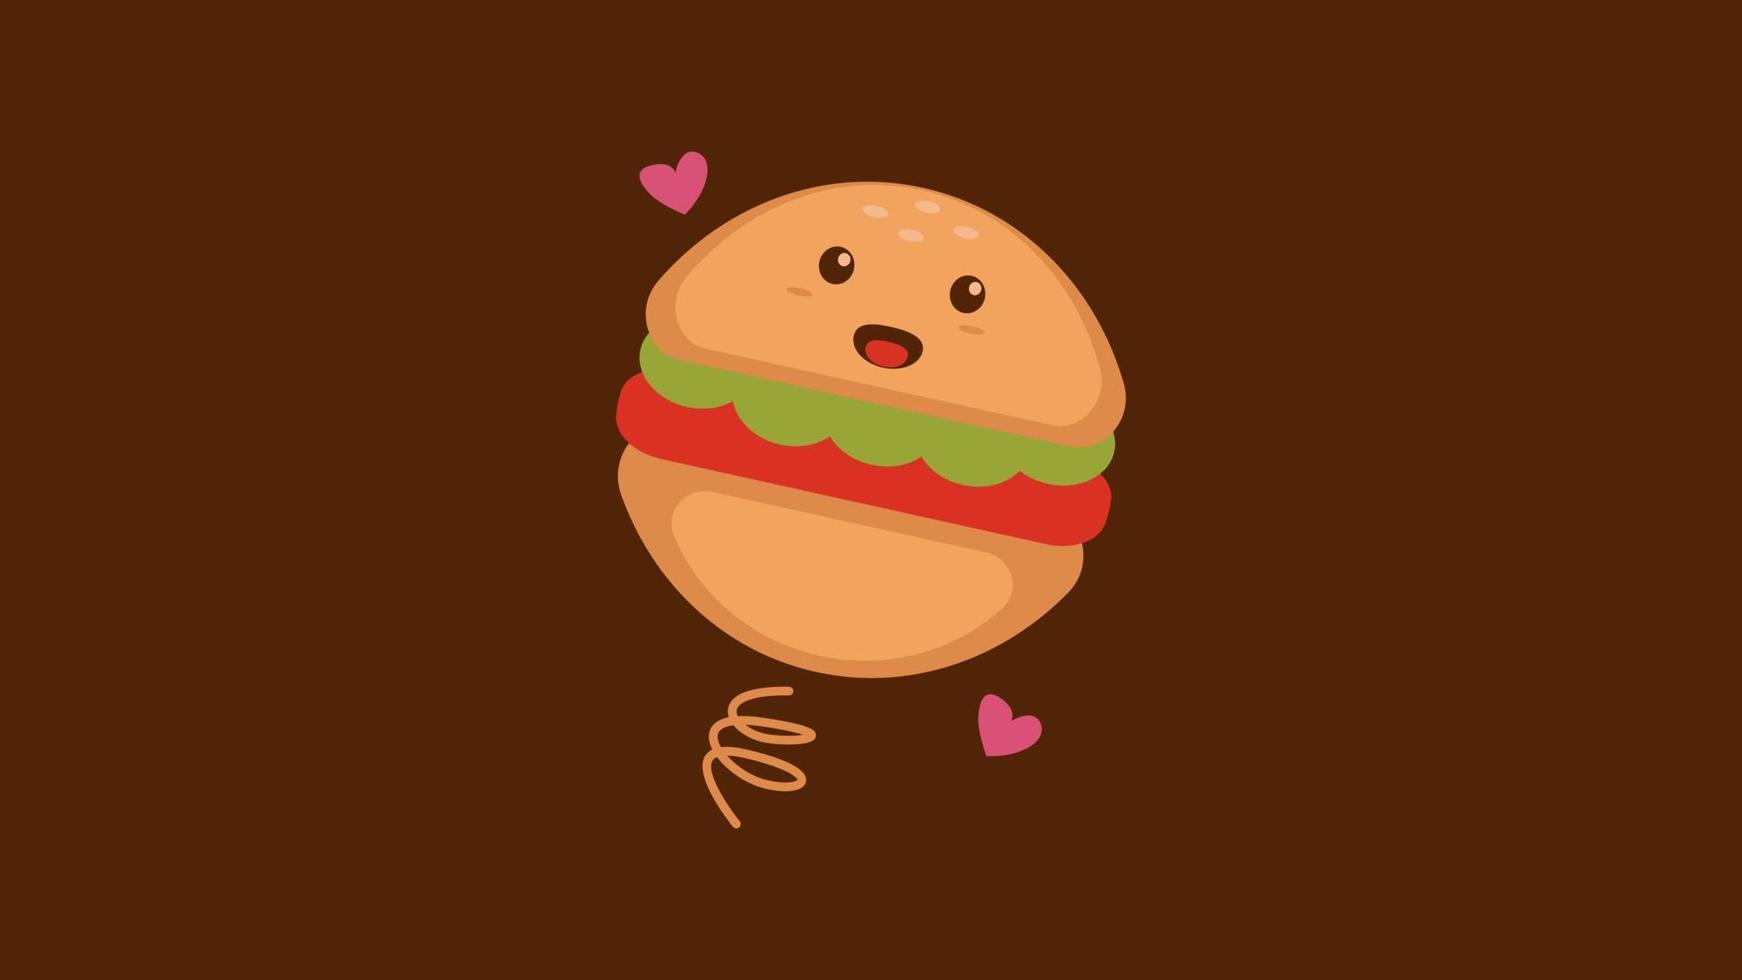 illustration vectorielle personnage de dessin animé graphique de burger dans un style kawaii doodle. convient aux vêtements pour enfants, aux livres pour enfants, au logo de la mascotte culinaire, etc. vecteur